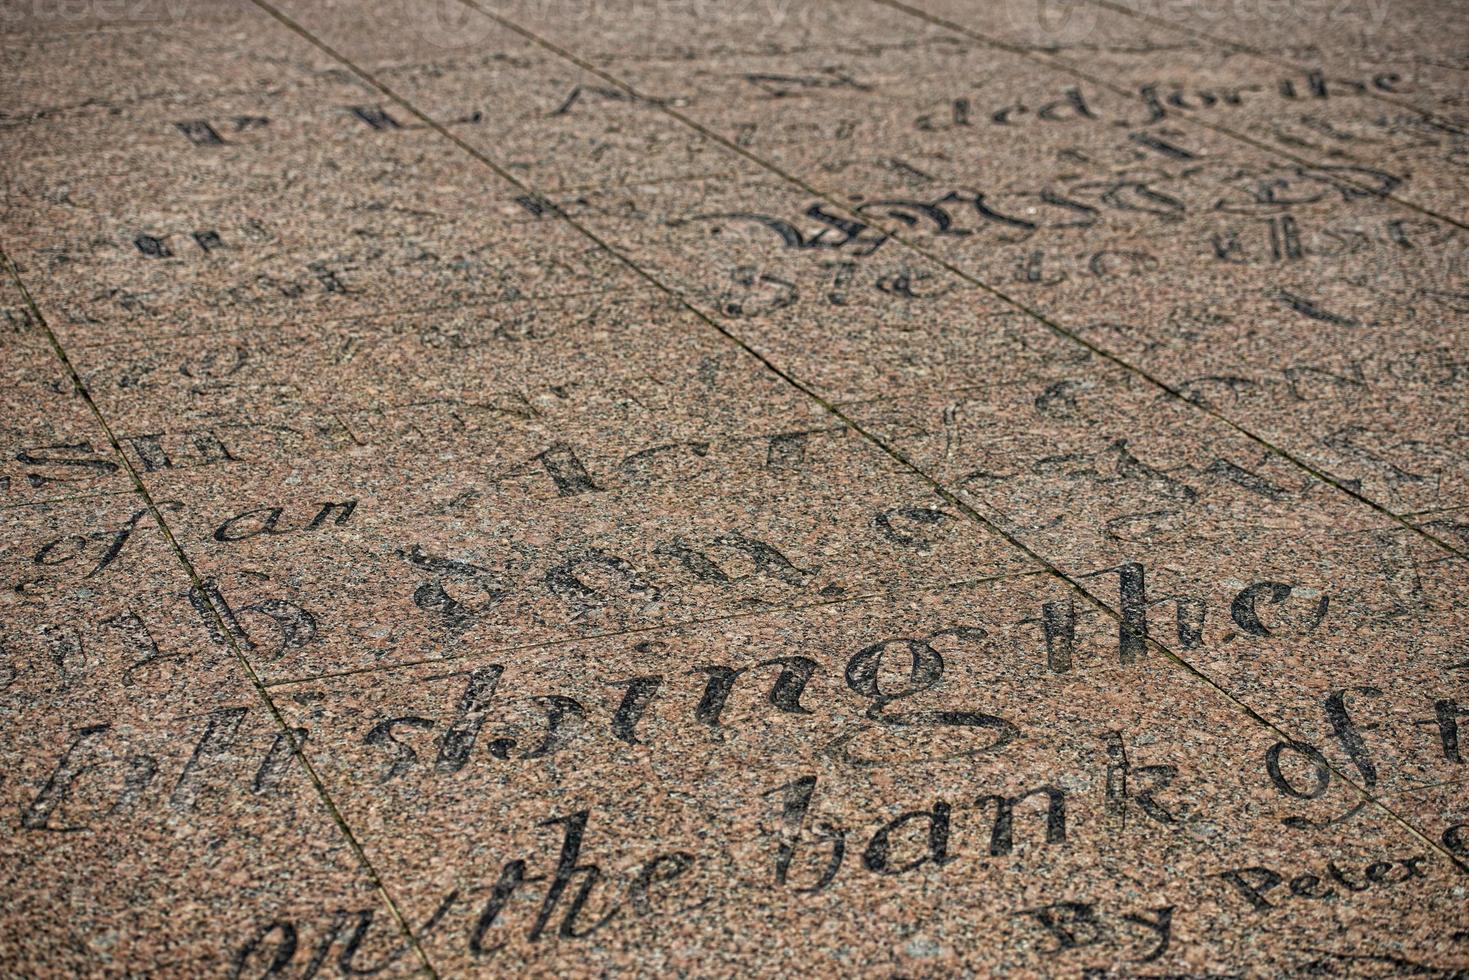 Washington DC Freedom Plaza writings photo